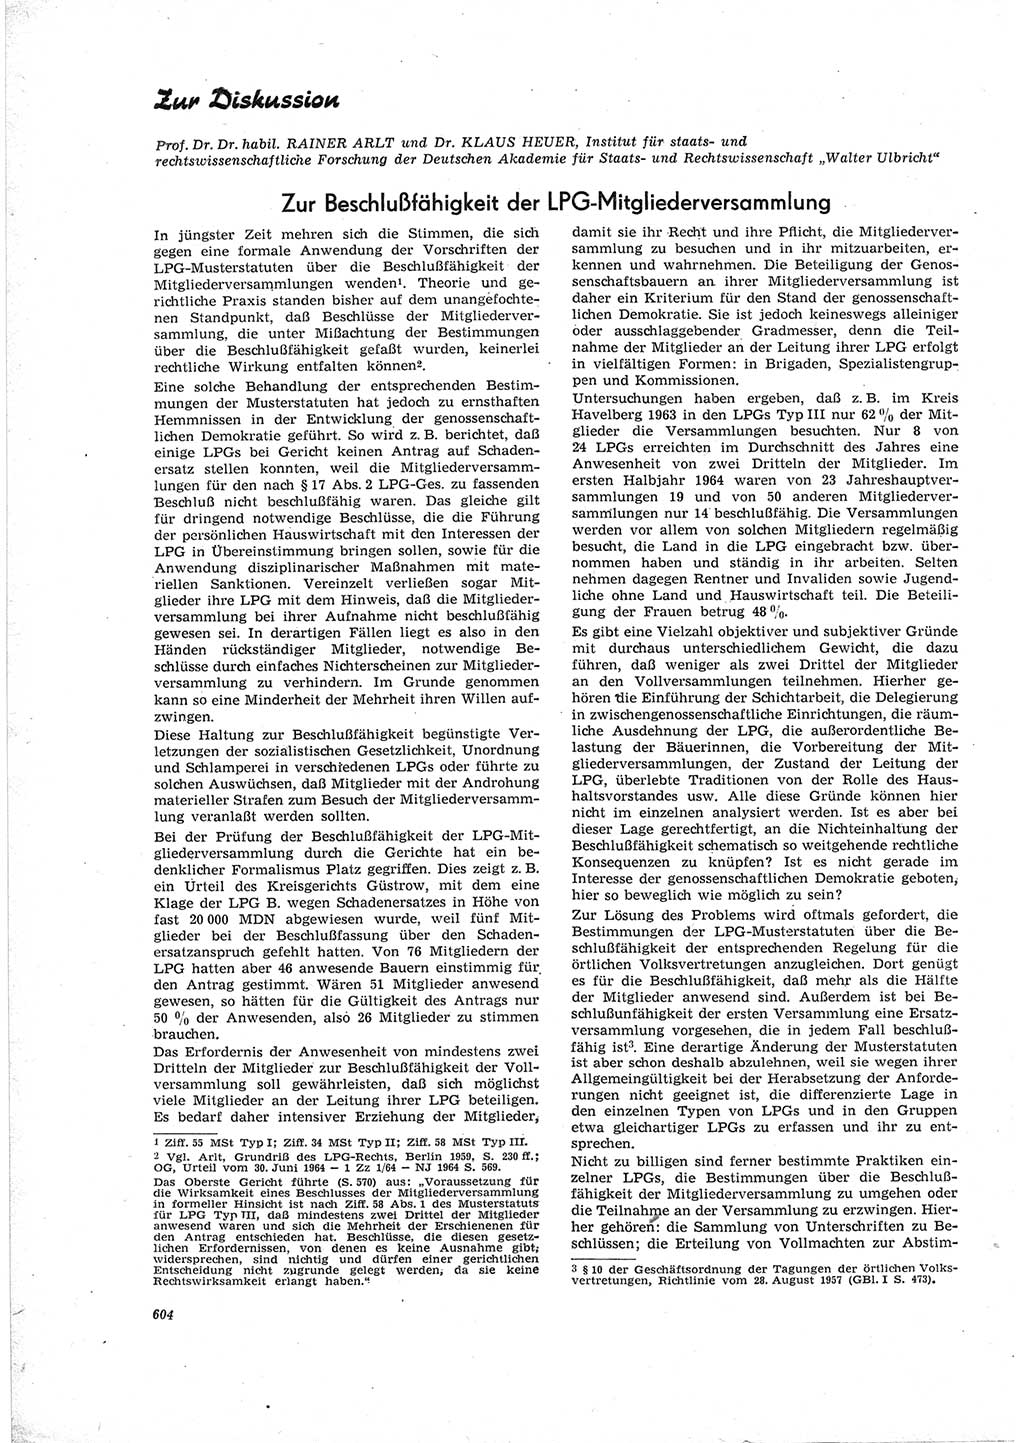 Neue Justiz (NJ), Zeitschrift für Recht und Rechtswissenschaft [Deutsche Demokratische Republik (DDR)], 19. Jahrgang 1965, Seite 604 (NJ DDR 1965, S. 604)